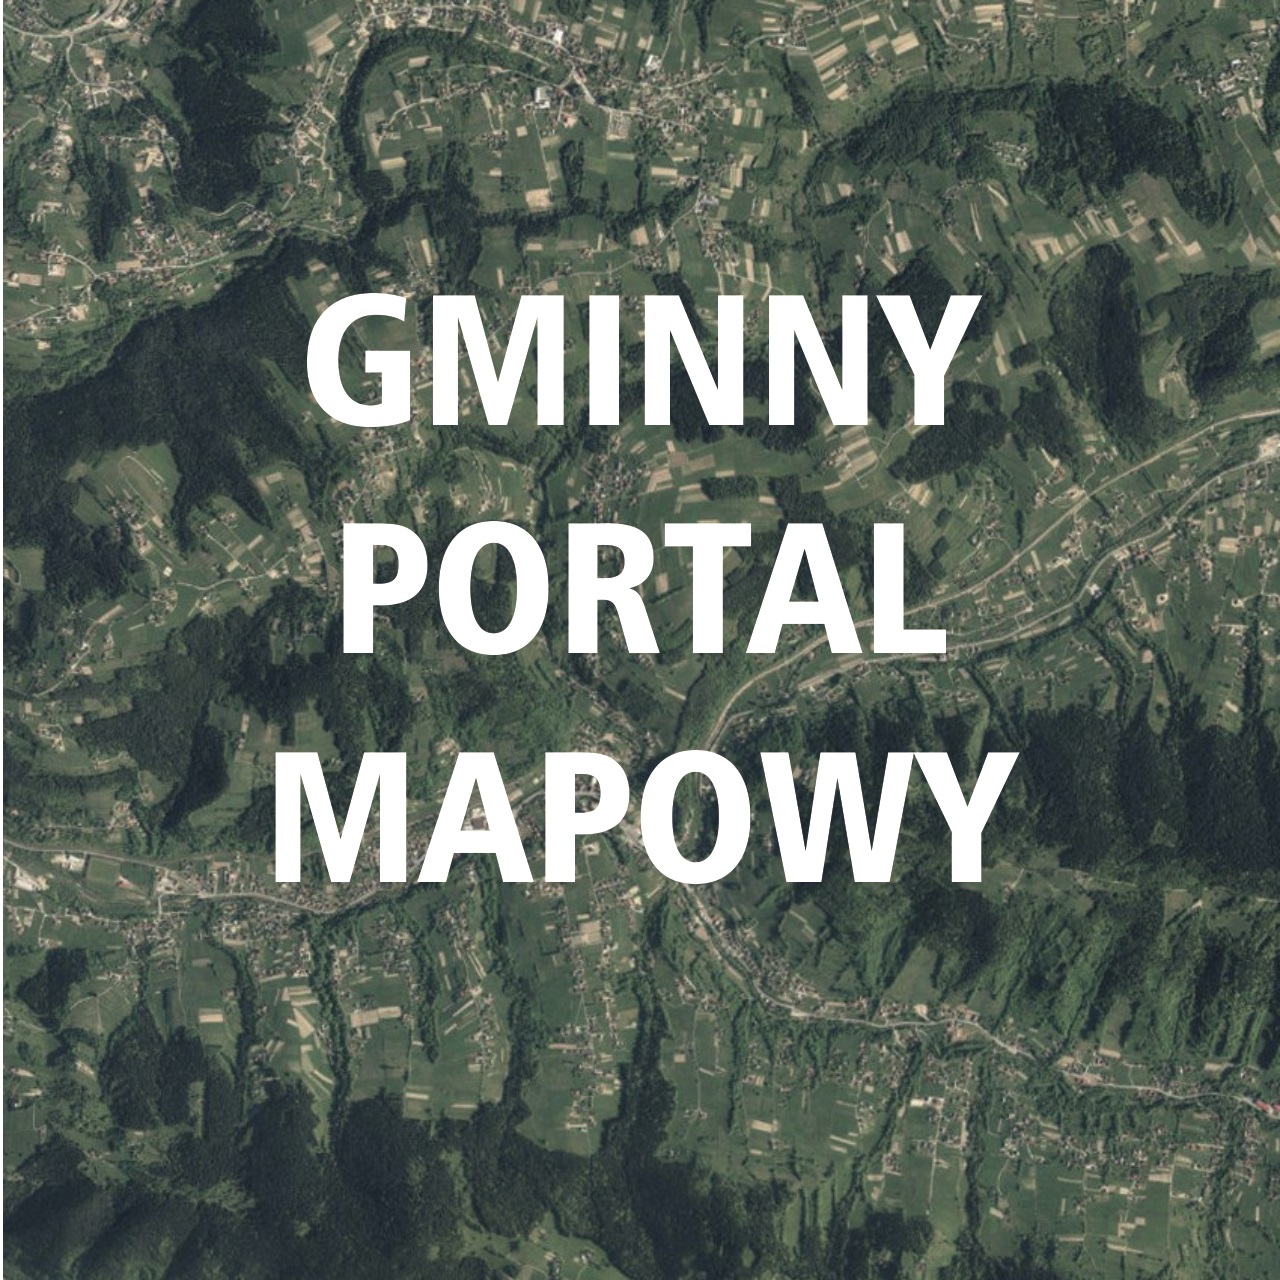 Gminny Portal Mapowy